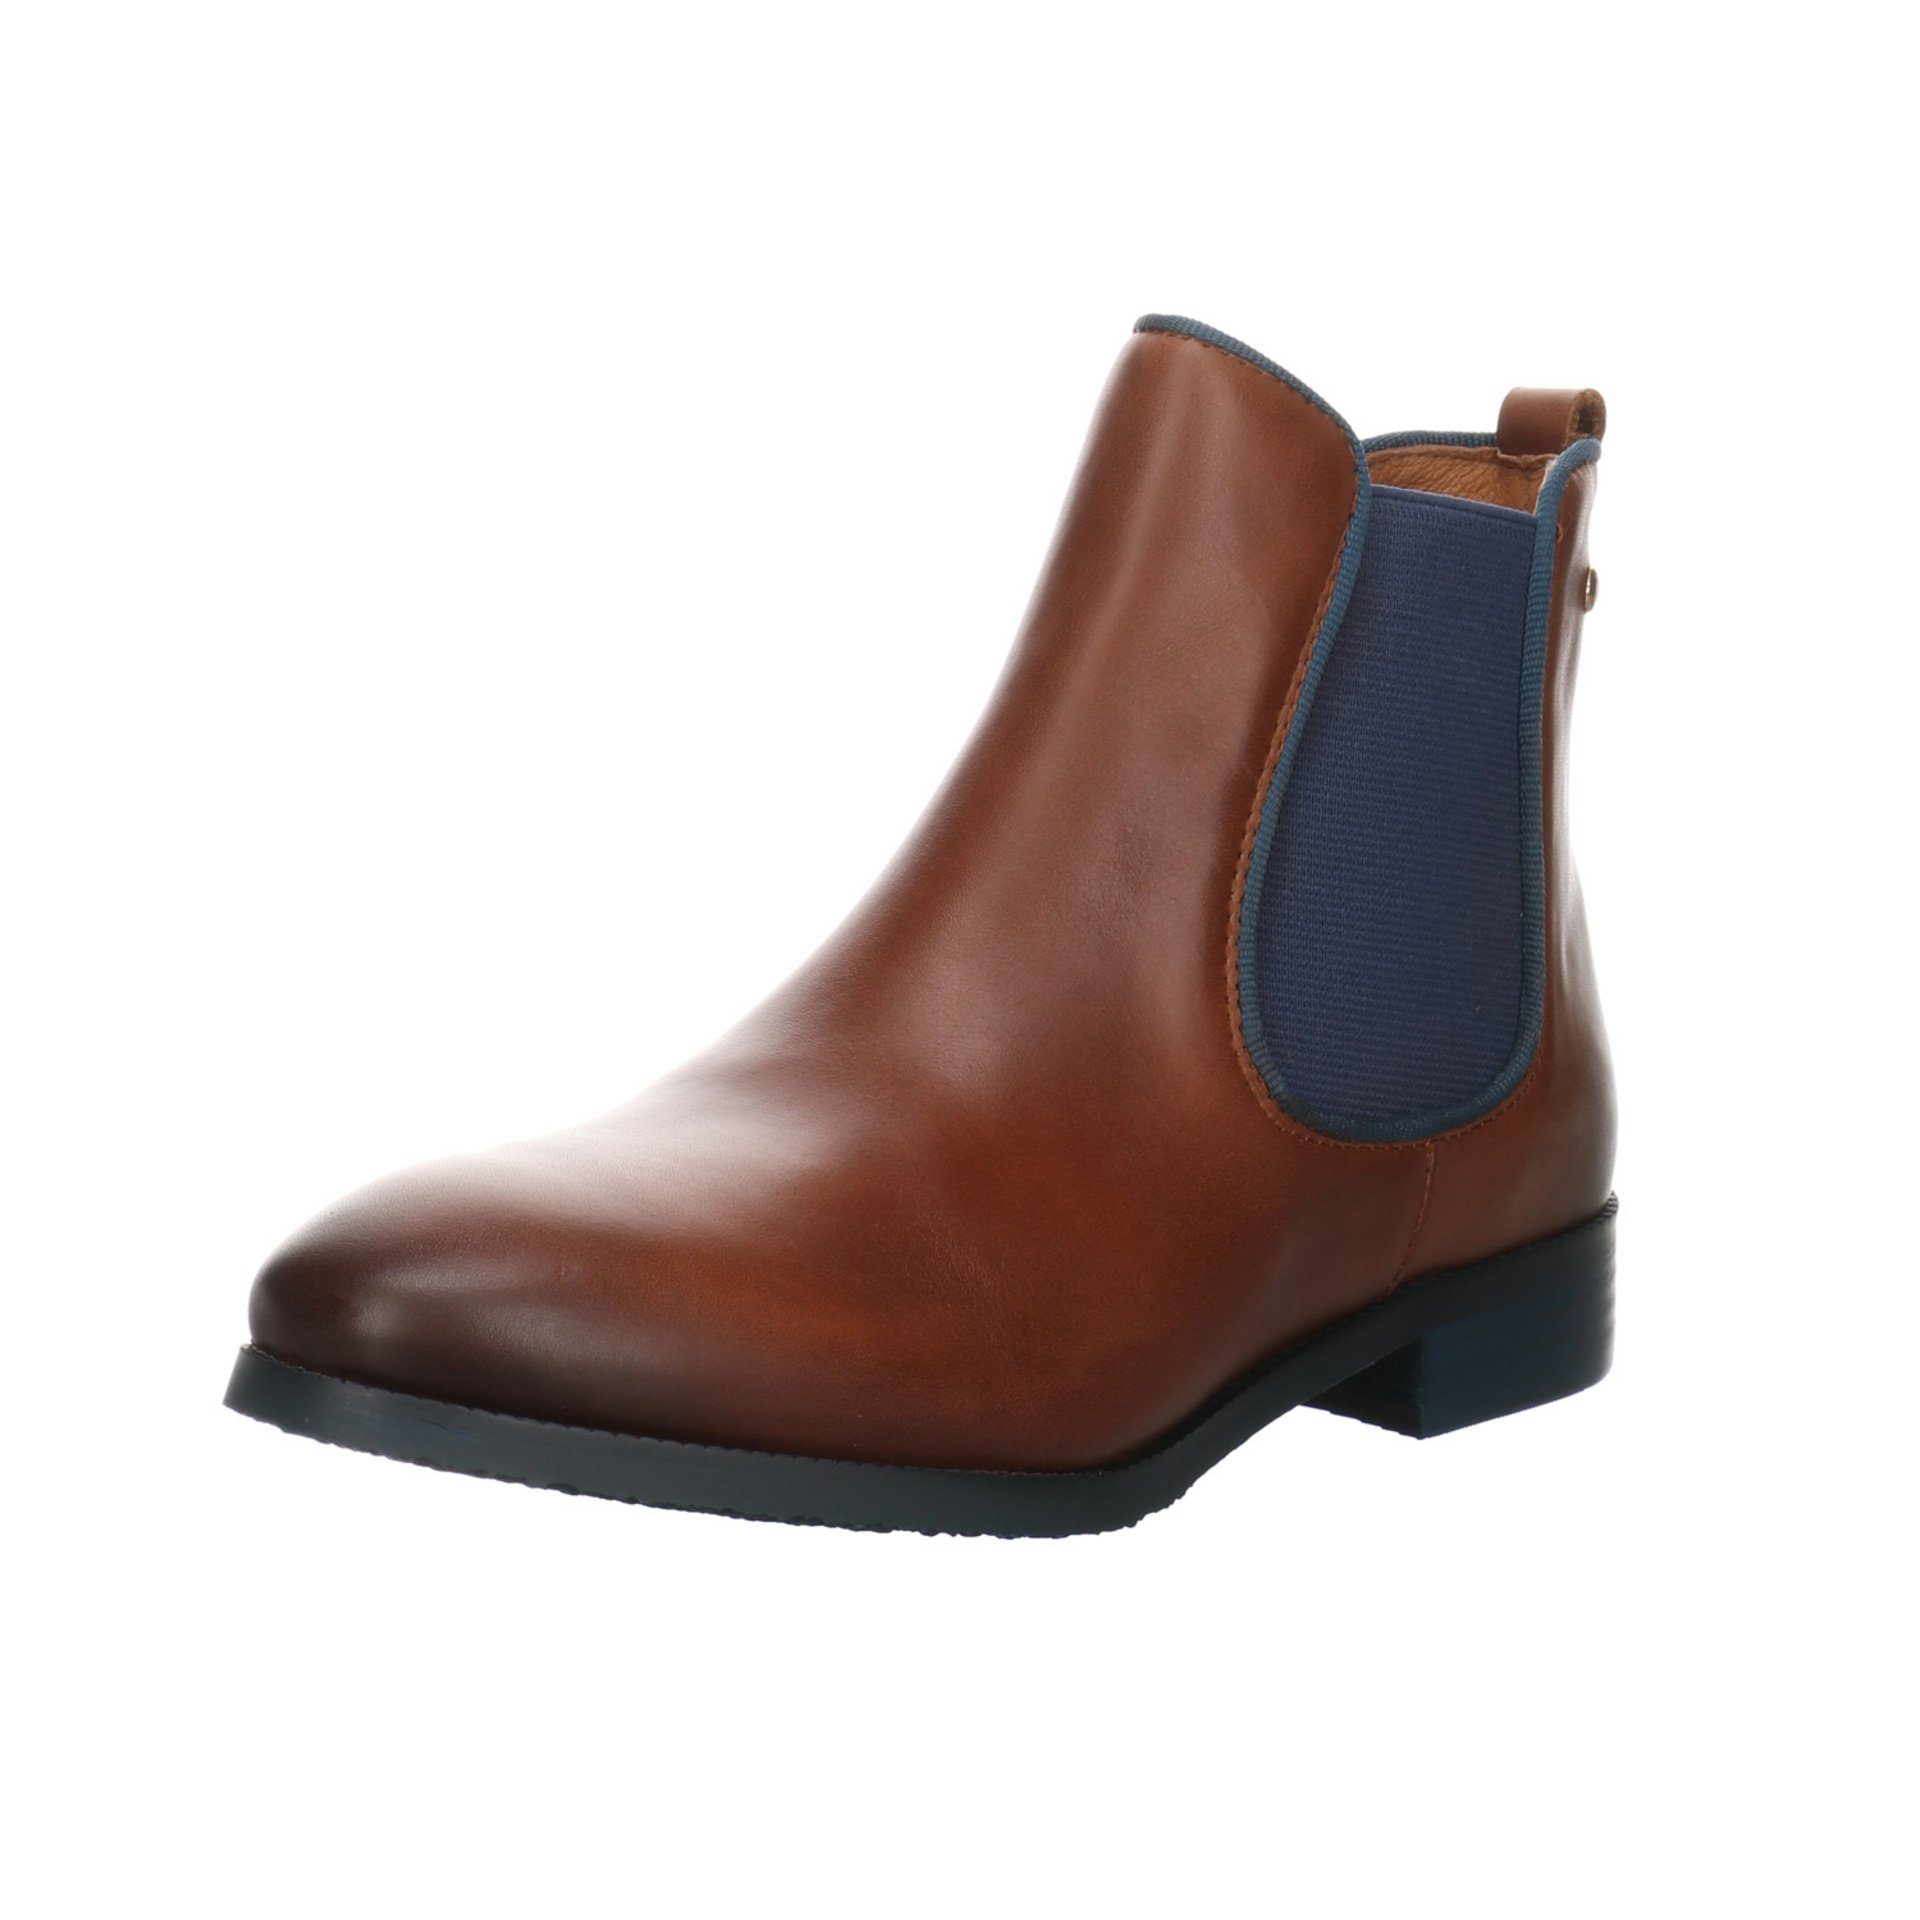 PIKOLINOS Damen Stiefeletten Schuhe Royal Chelsea Boots Stiefelette Leder-/Textilkombination Braun